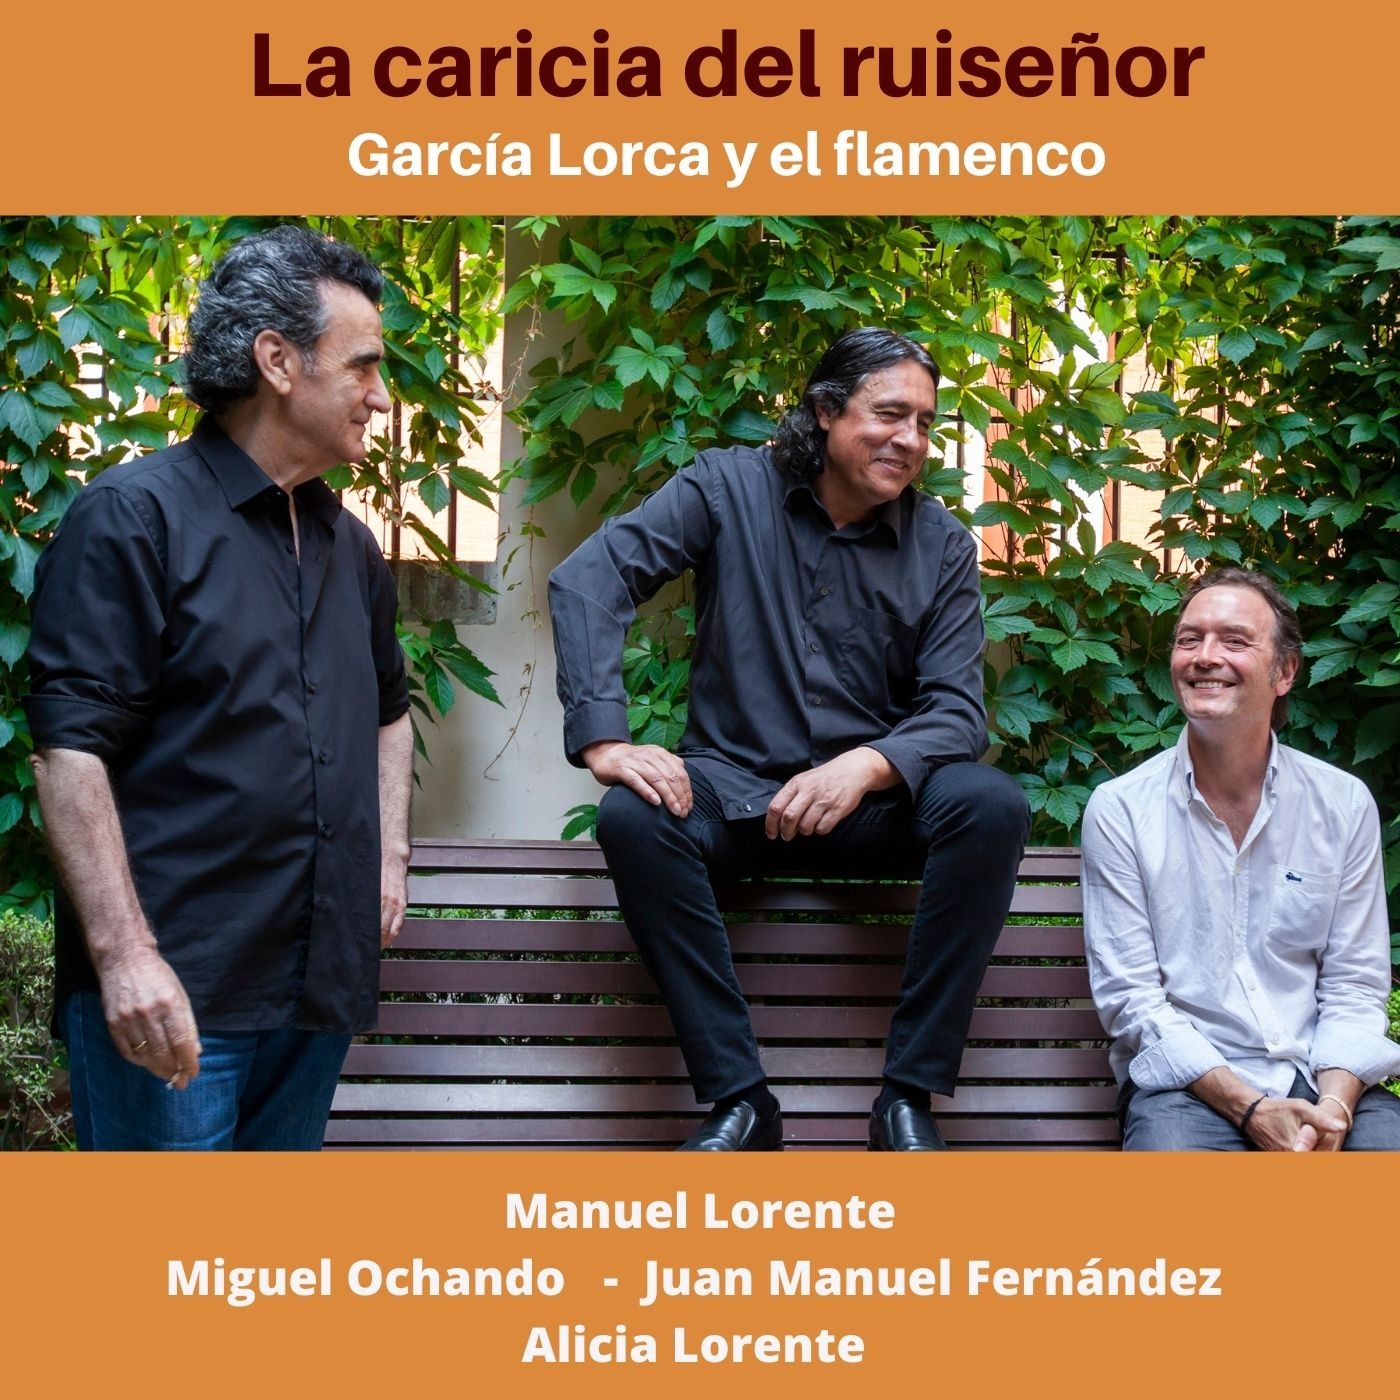 CD Juan El de la vara – Flamenco puro (2 CDs)